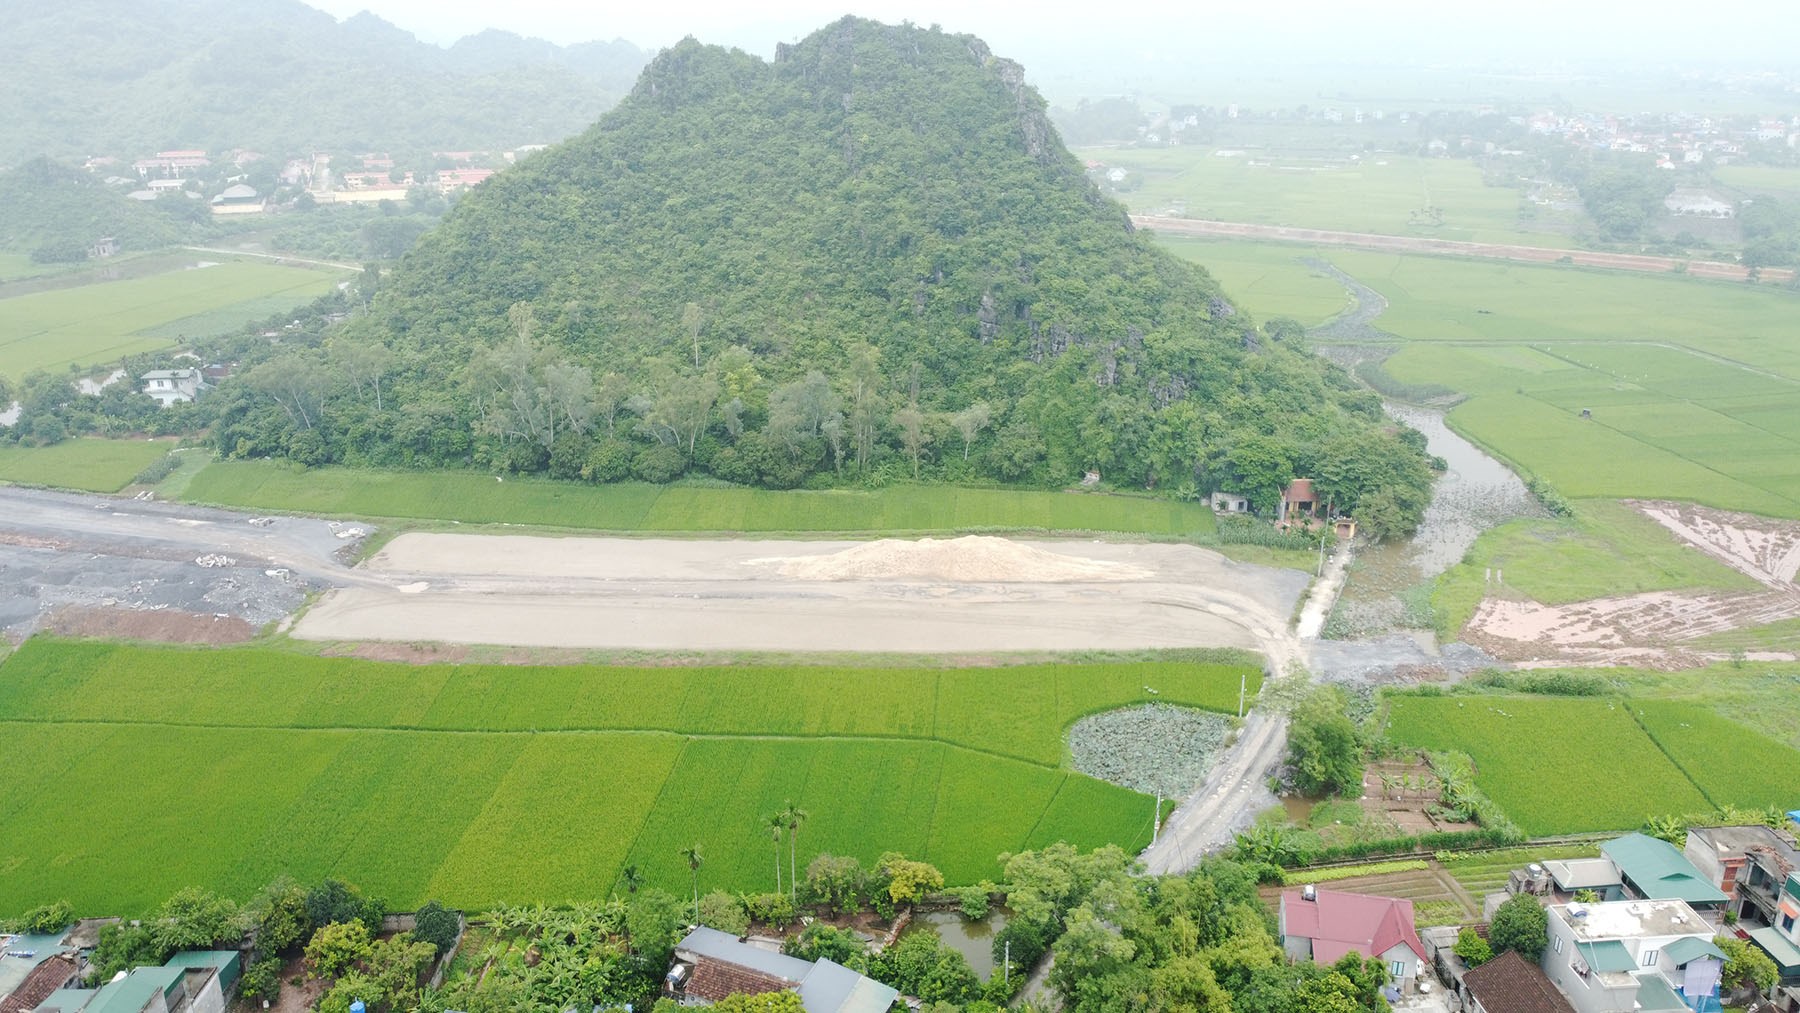 Toàn cảnh tuyến đường nối Vành đai 4 - Vành đai 5 qua QL38 đến QL21 huyện Kim Bảng, Hà Nam đang xây dựng